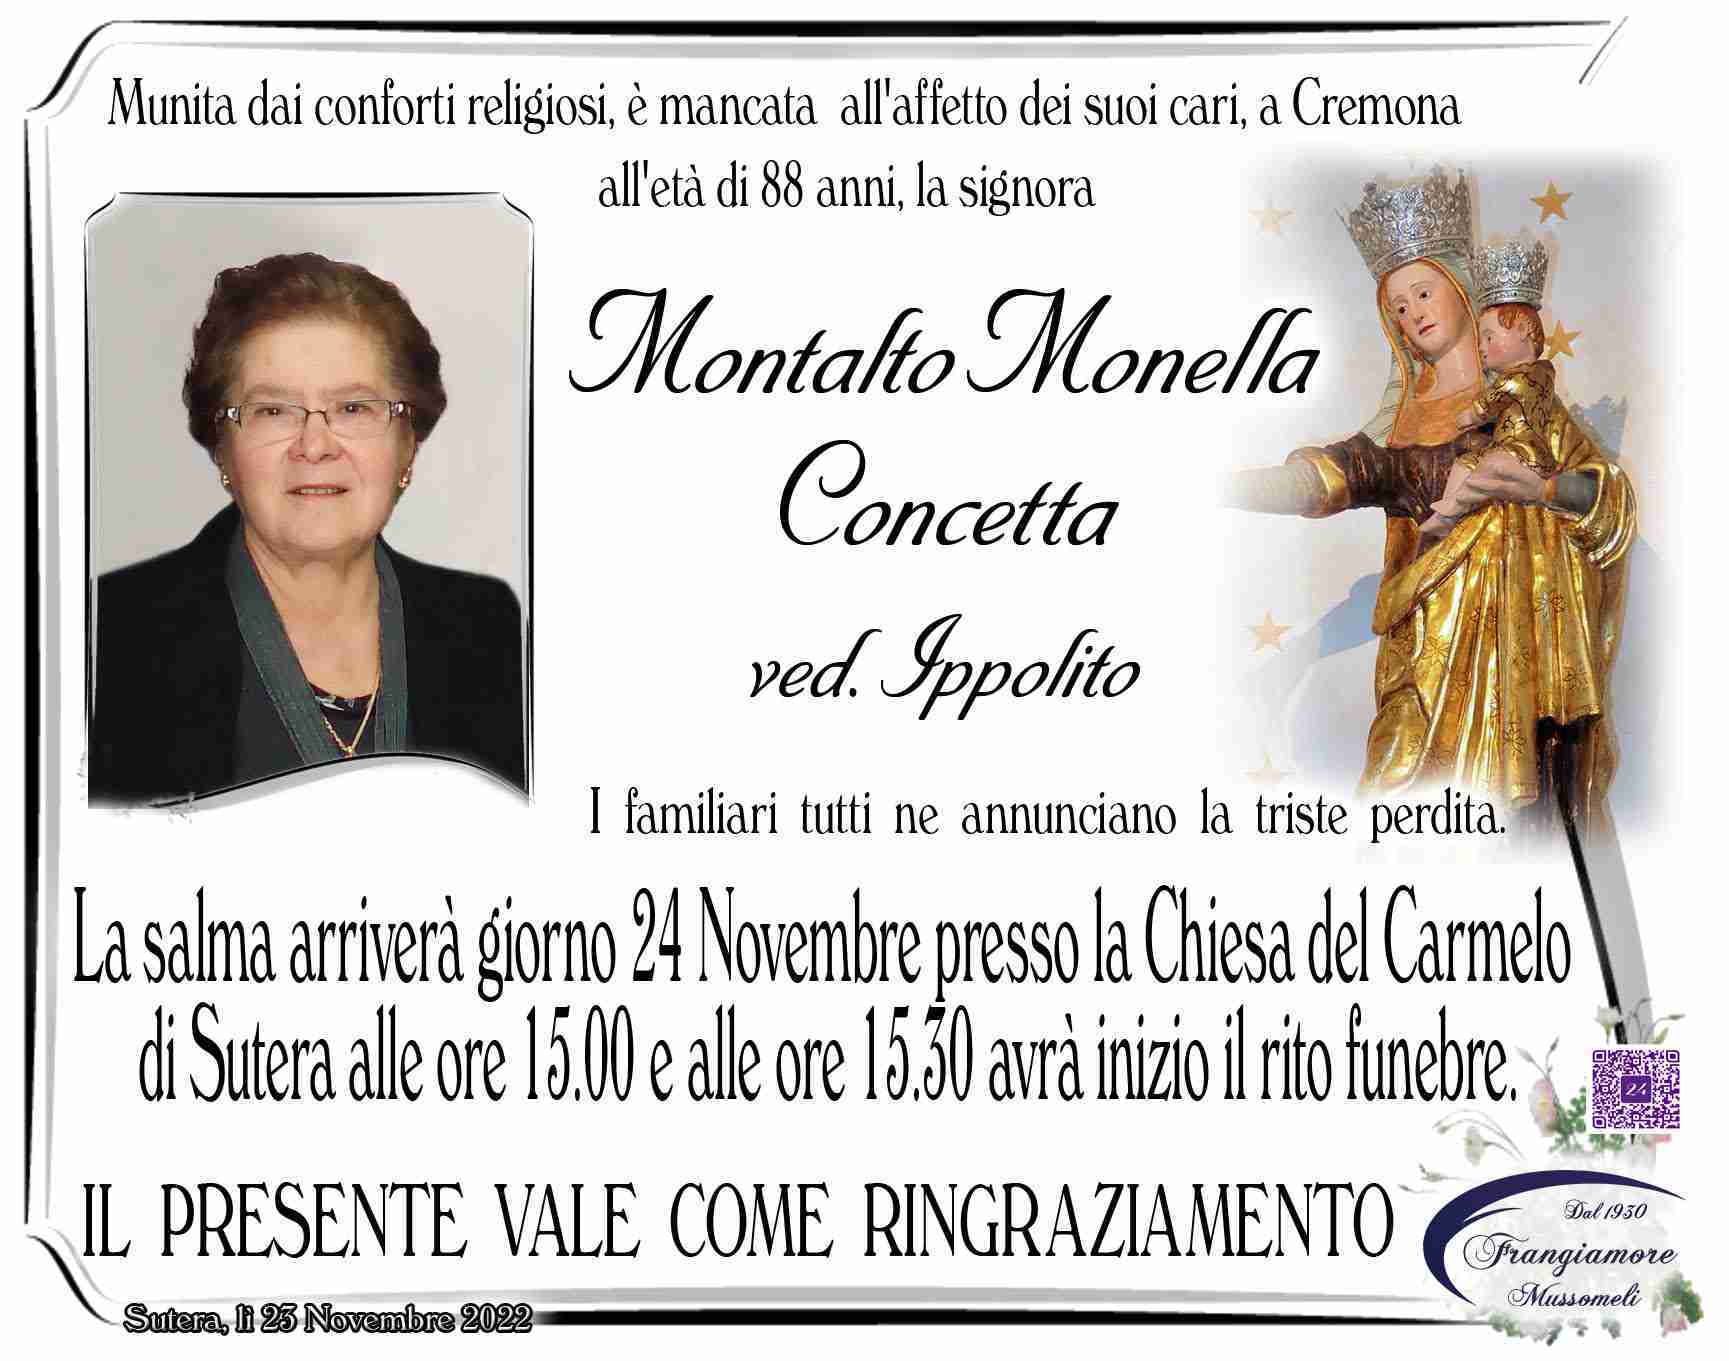 Concetta Montalto Monella